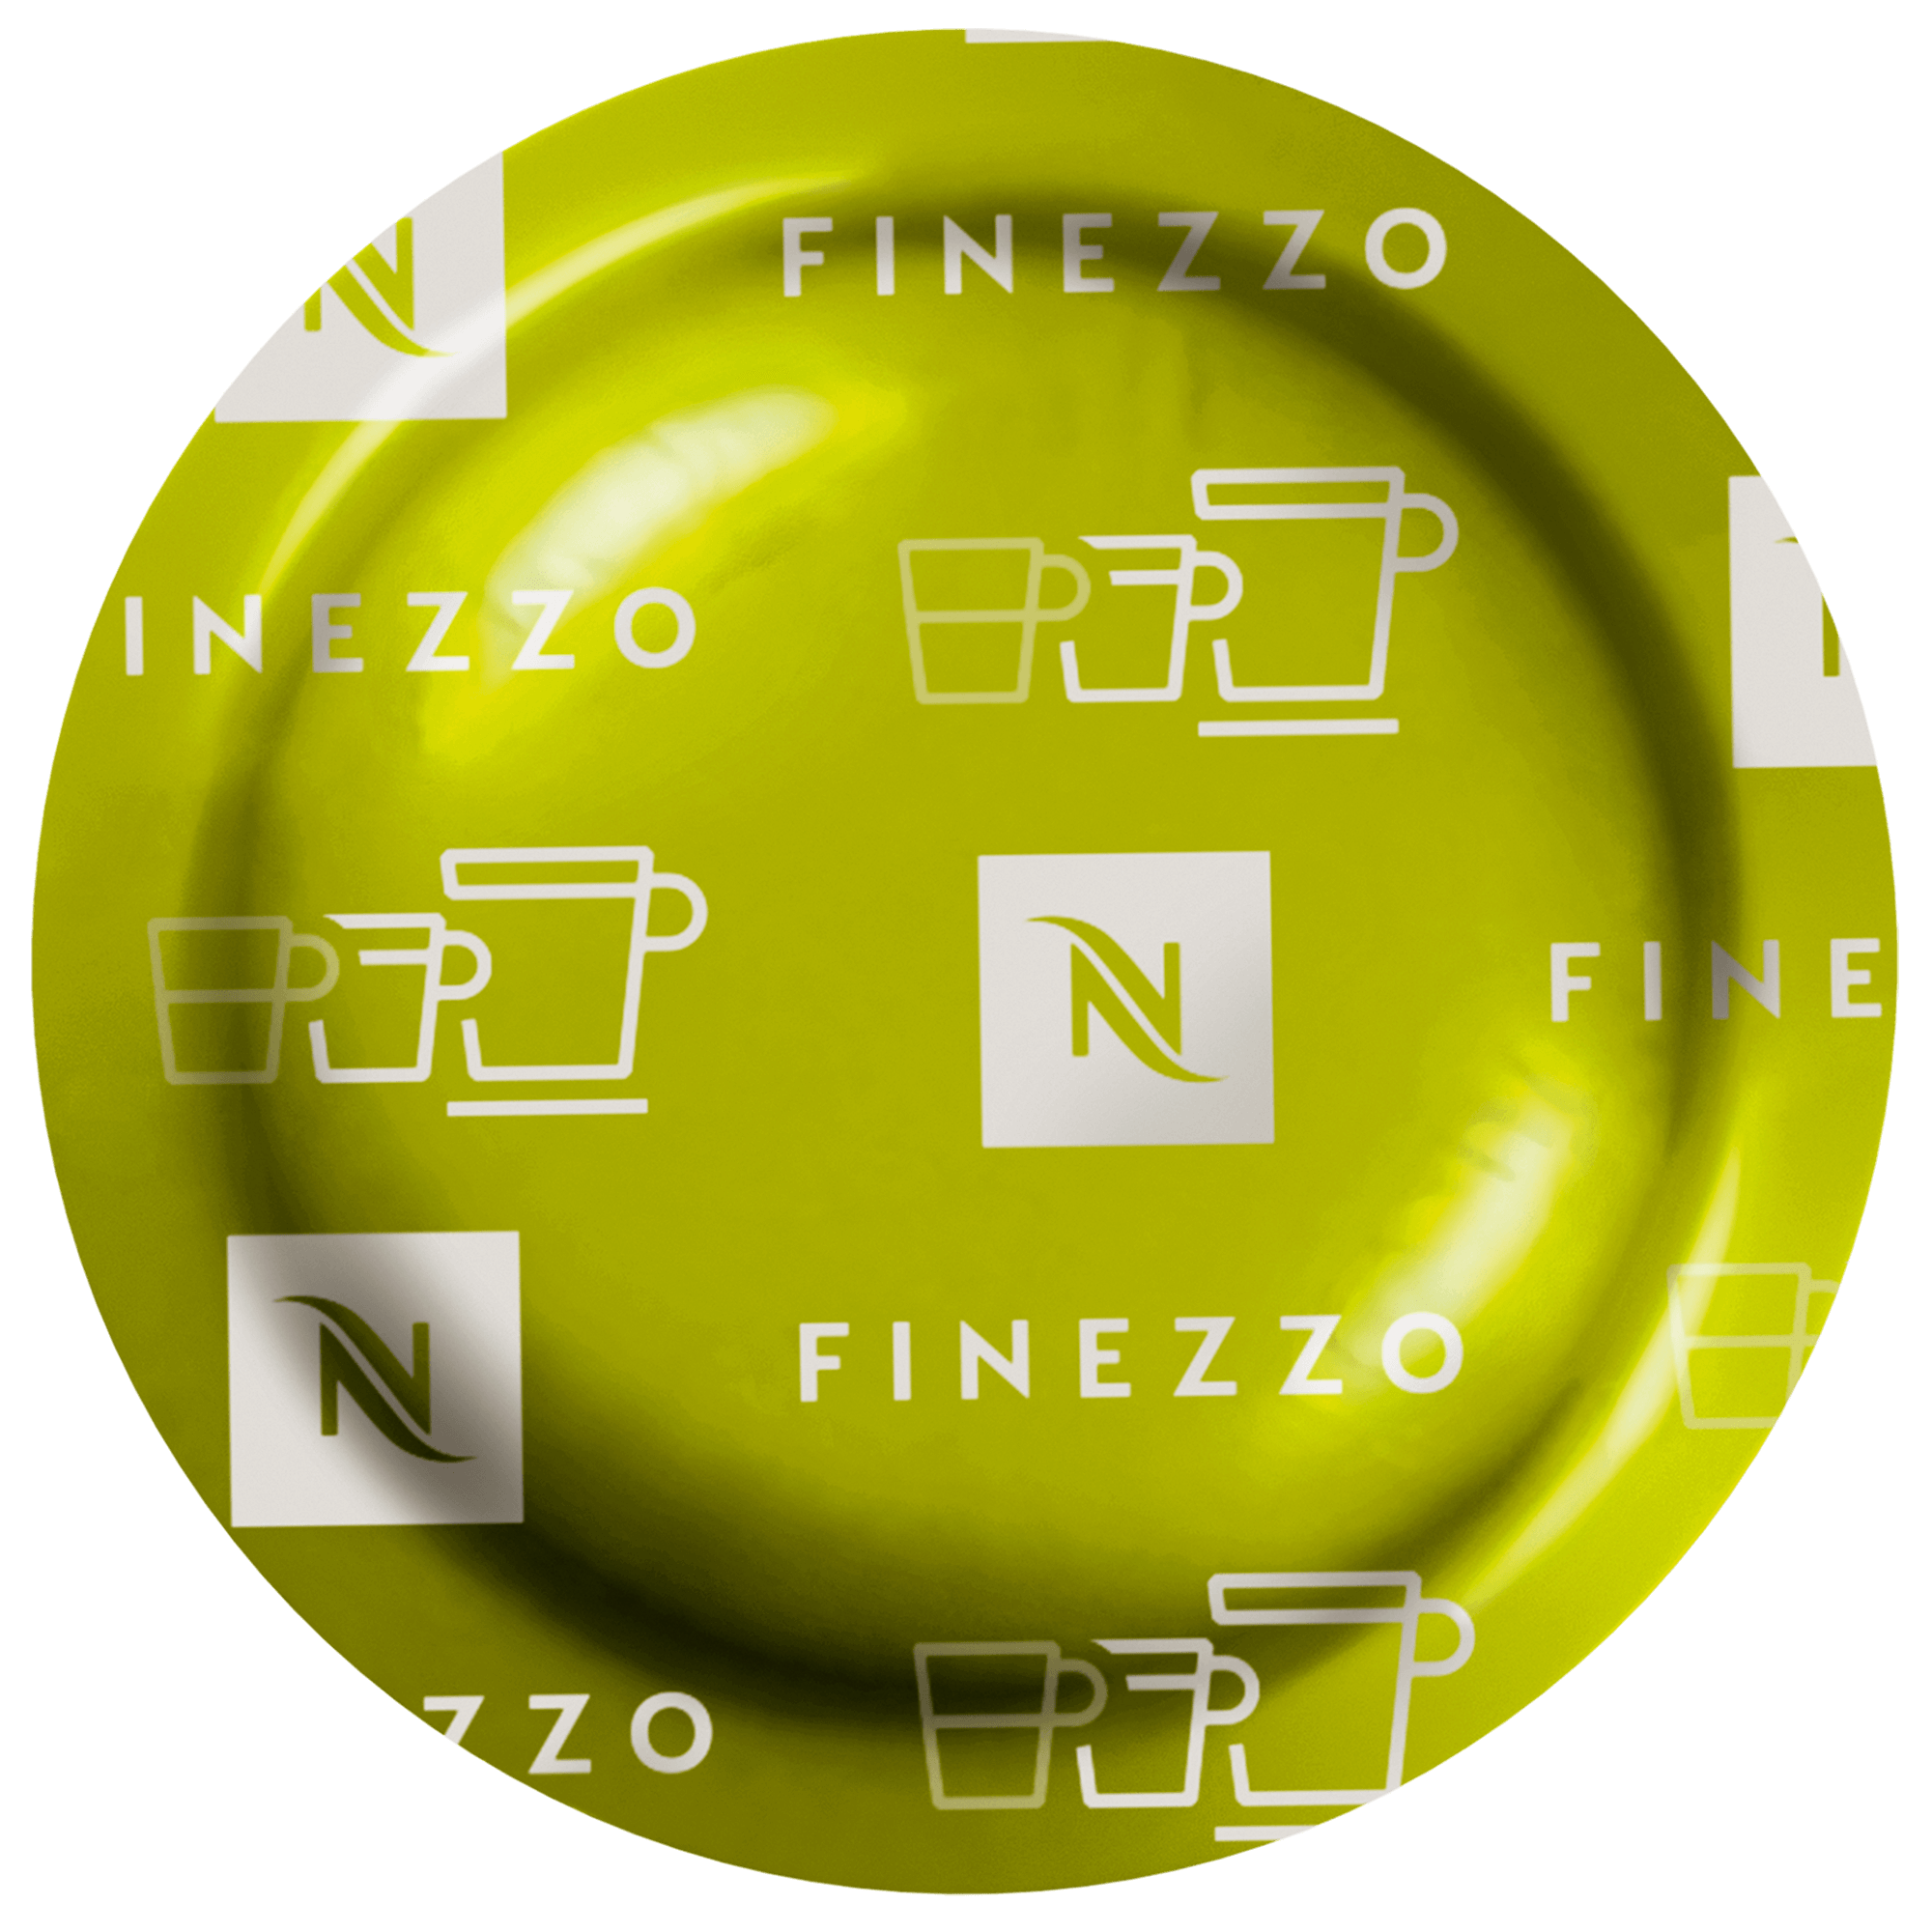 Ouaziz Food officiel - Capsule Nespresso pro ( 50 unité ) Prix 265.00 dh